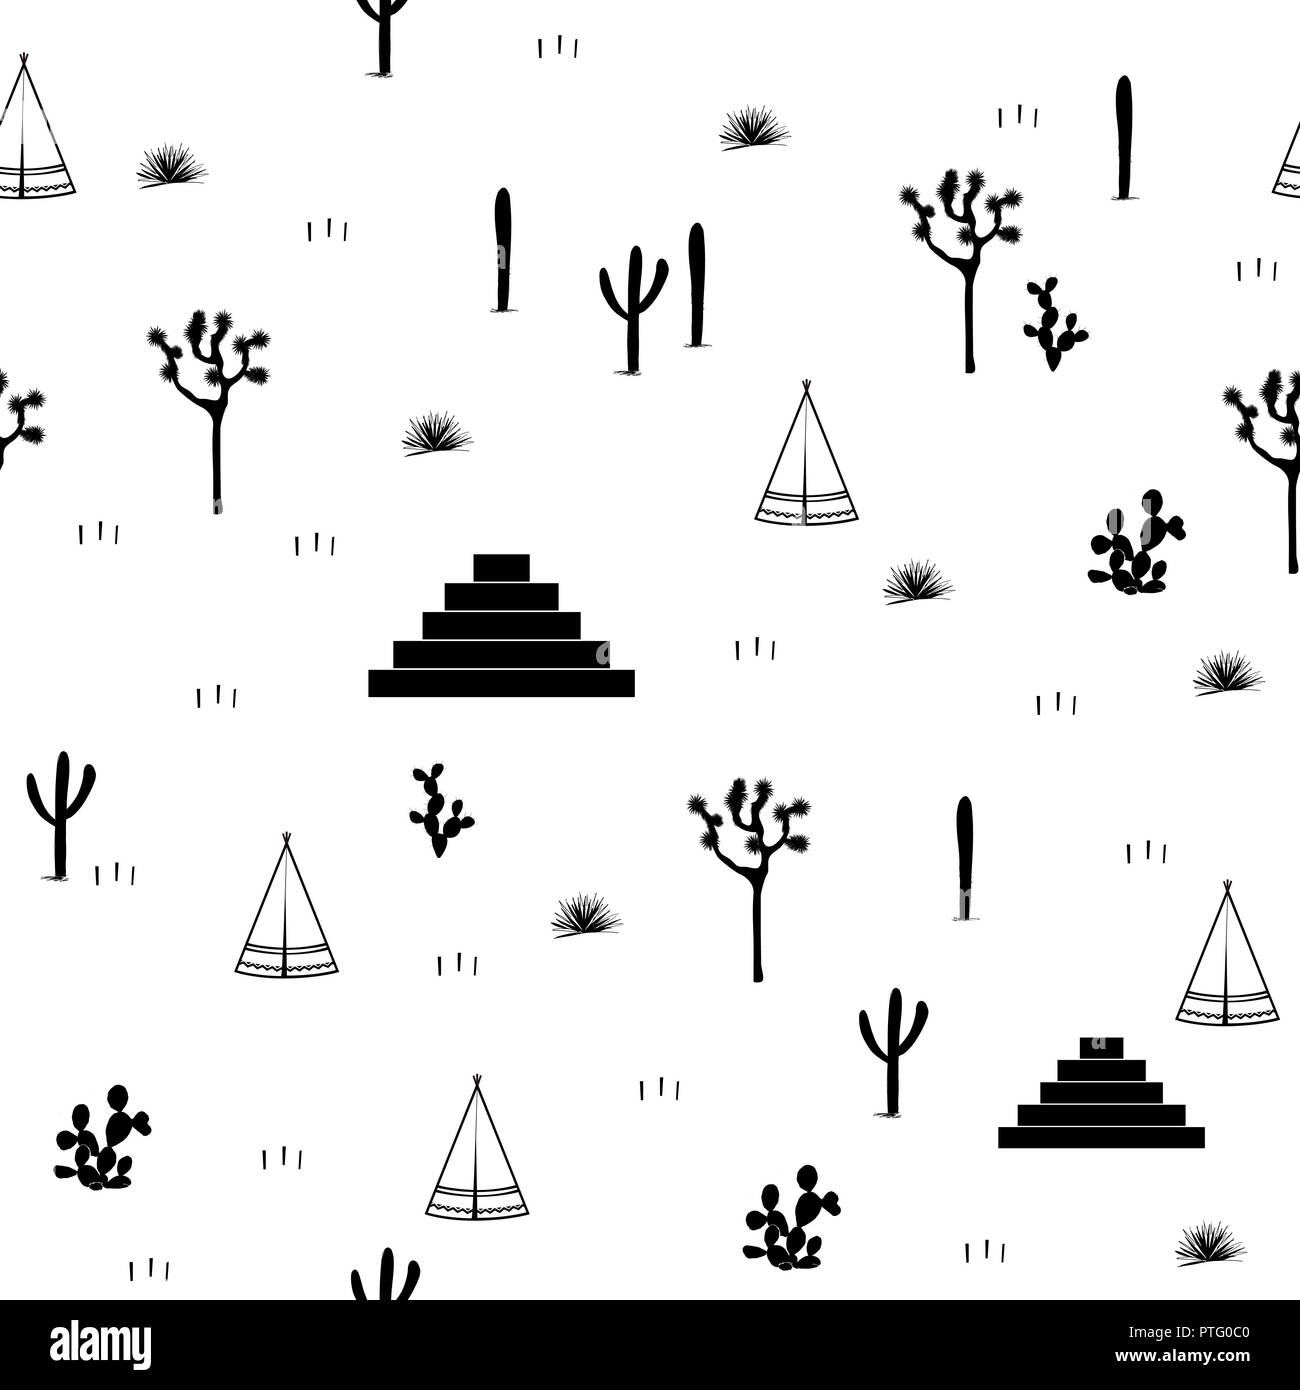 Pyramiden, indische Zelte, Saguaro, Agaven, und Opuntia Kakteen auf weißem Hintergrund. Nettes Design für Textilien, Tapeten, Kinder Industrie. Vektor illustra Stock Vektor